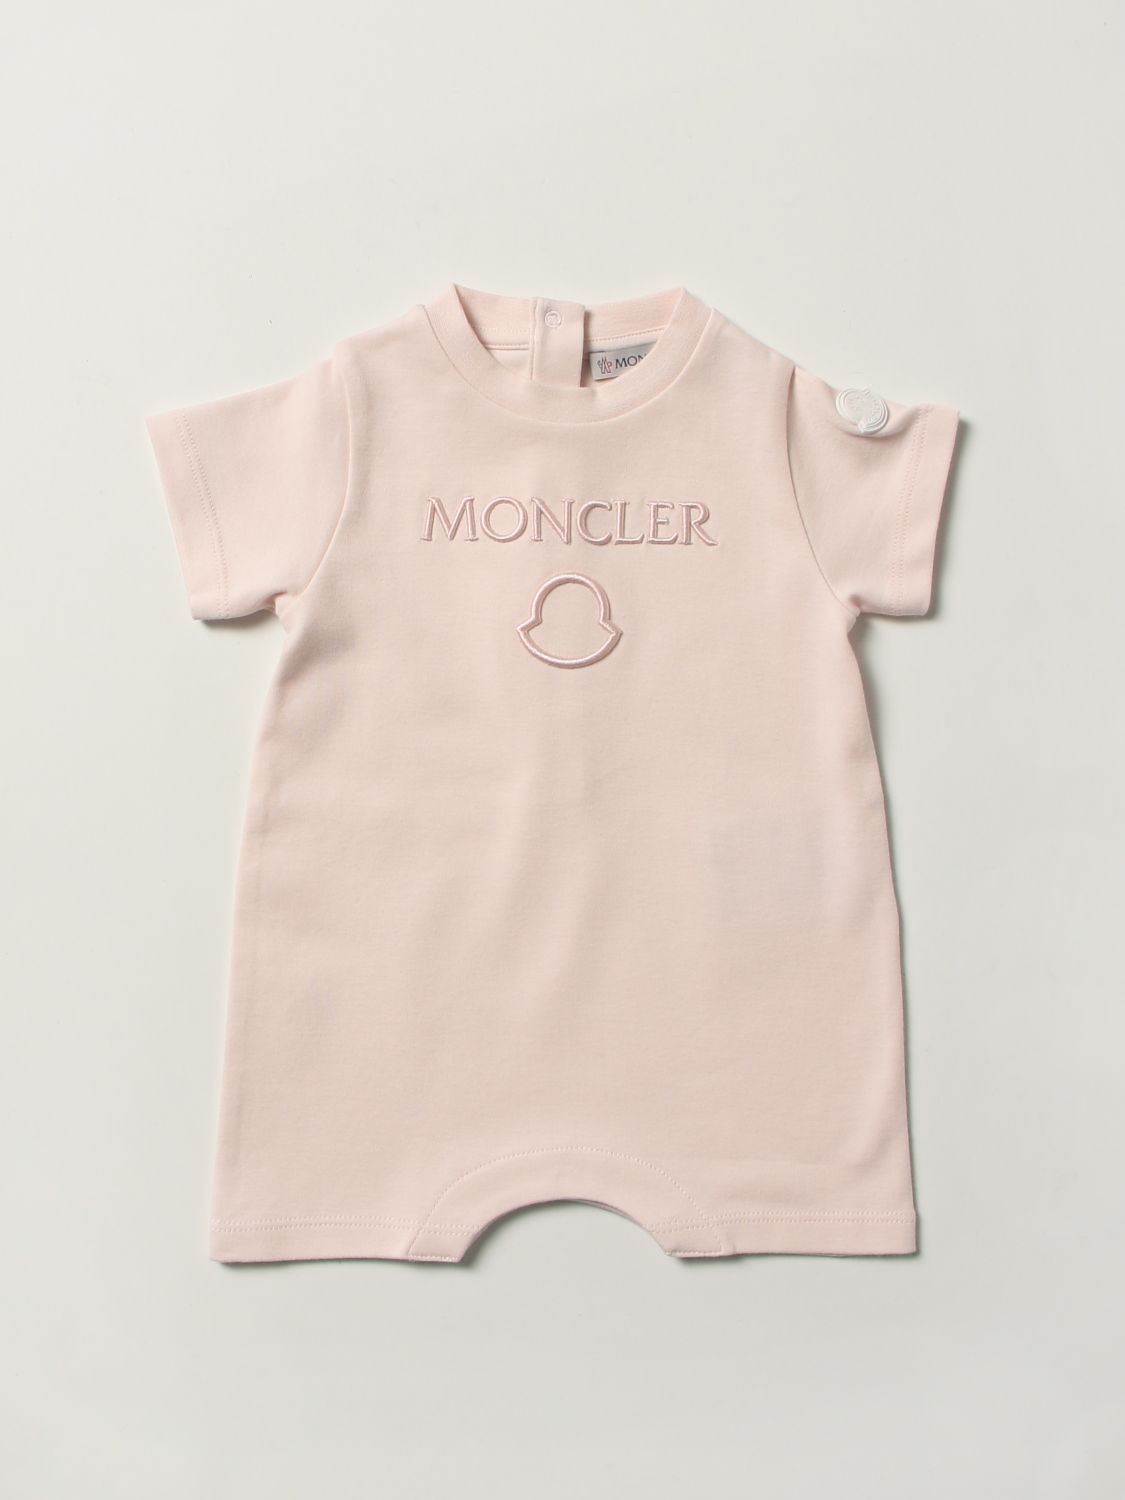 カバーオール モンクレール: カバーオール Moncler 幼児 ピンク 1